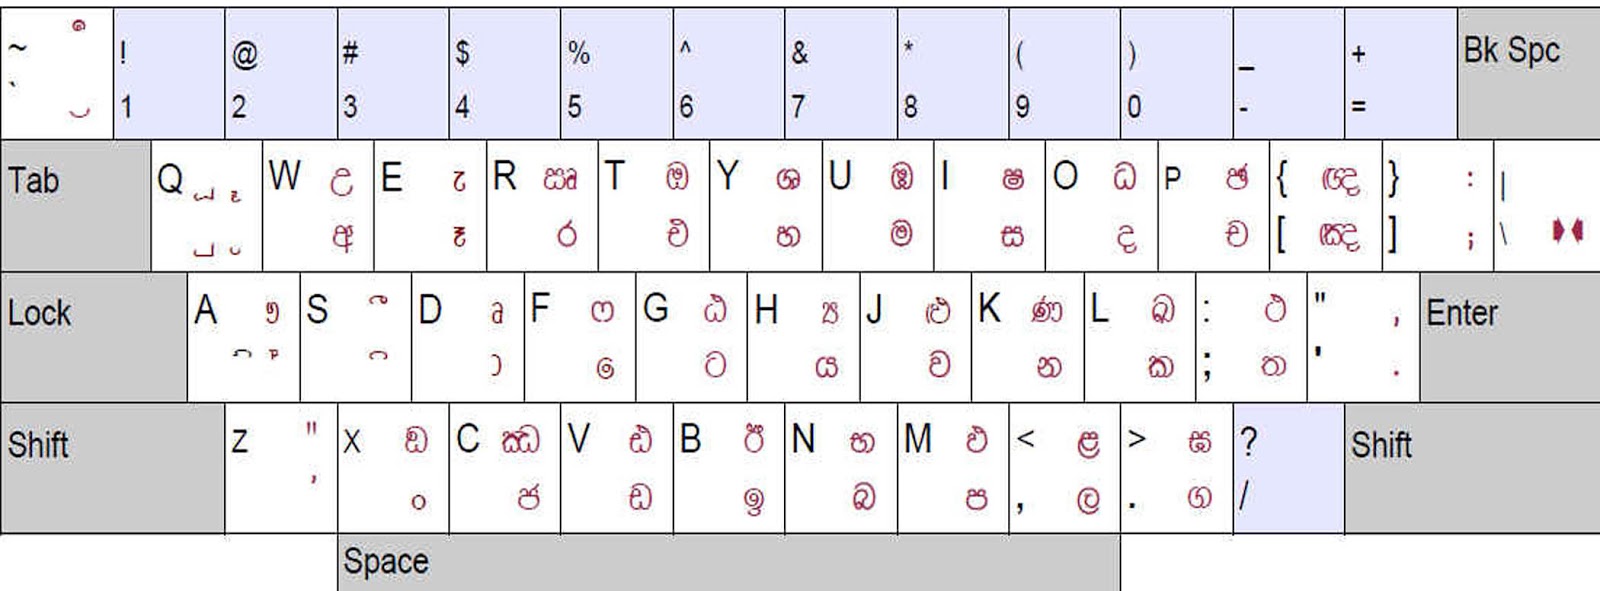 sinhala keyboard layout free download